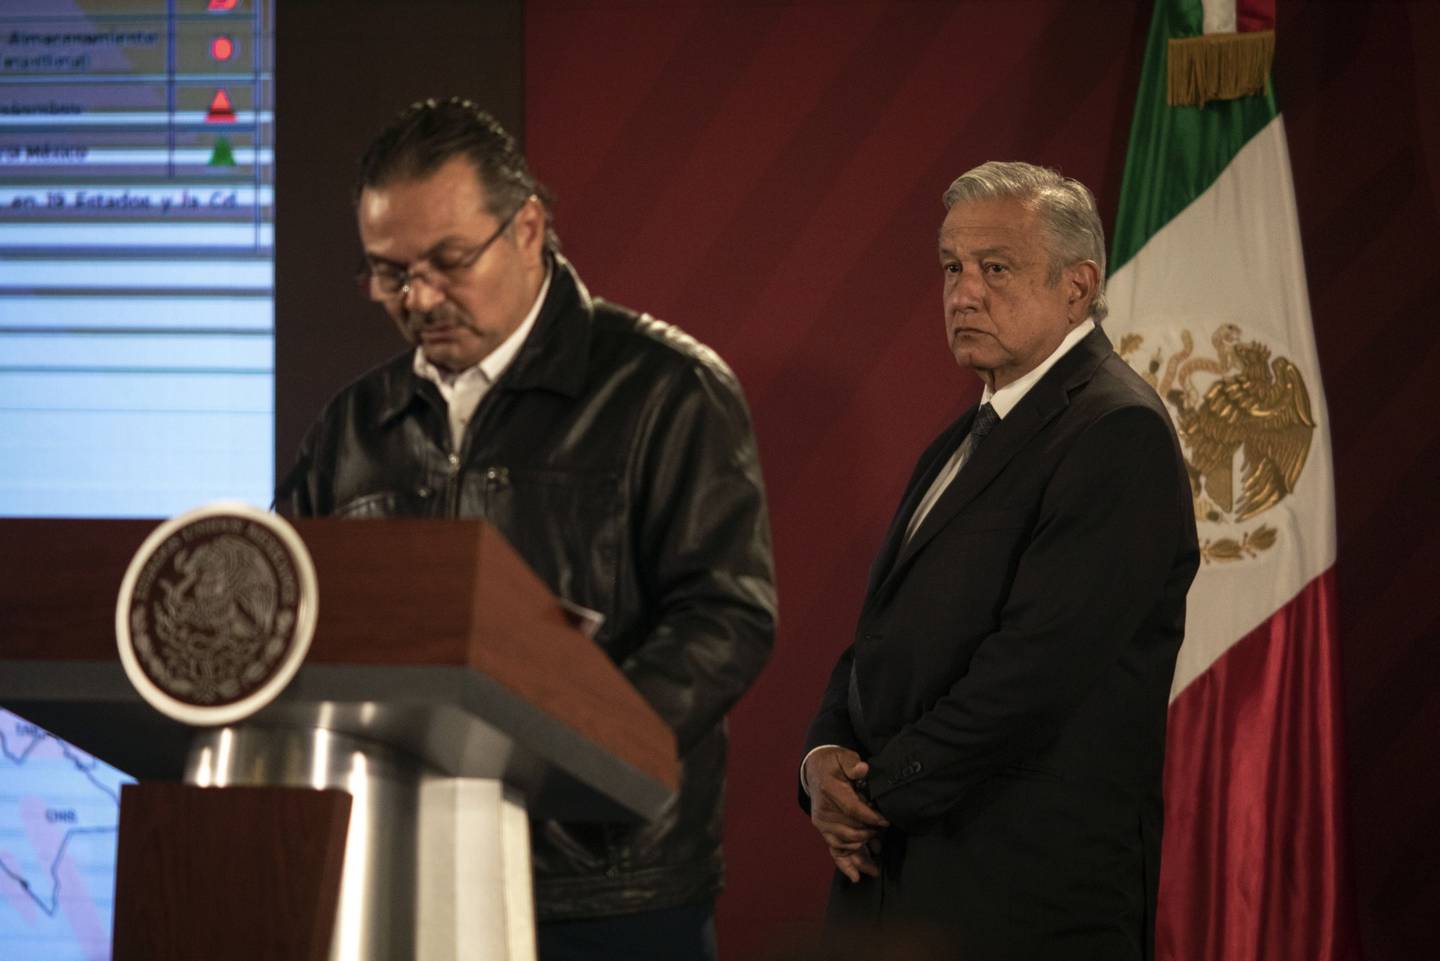 El presidente mexicano Andrés Manuel López Obrador, escucha mientras habla el CEO de Petróleos Mexicanos (Pemex) durante un conferencia de prensa en Palacio Nacional en la Ciudad de México.